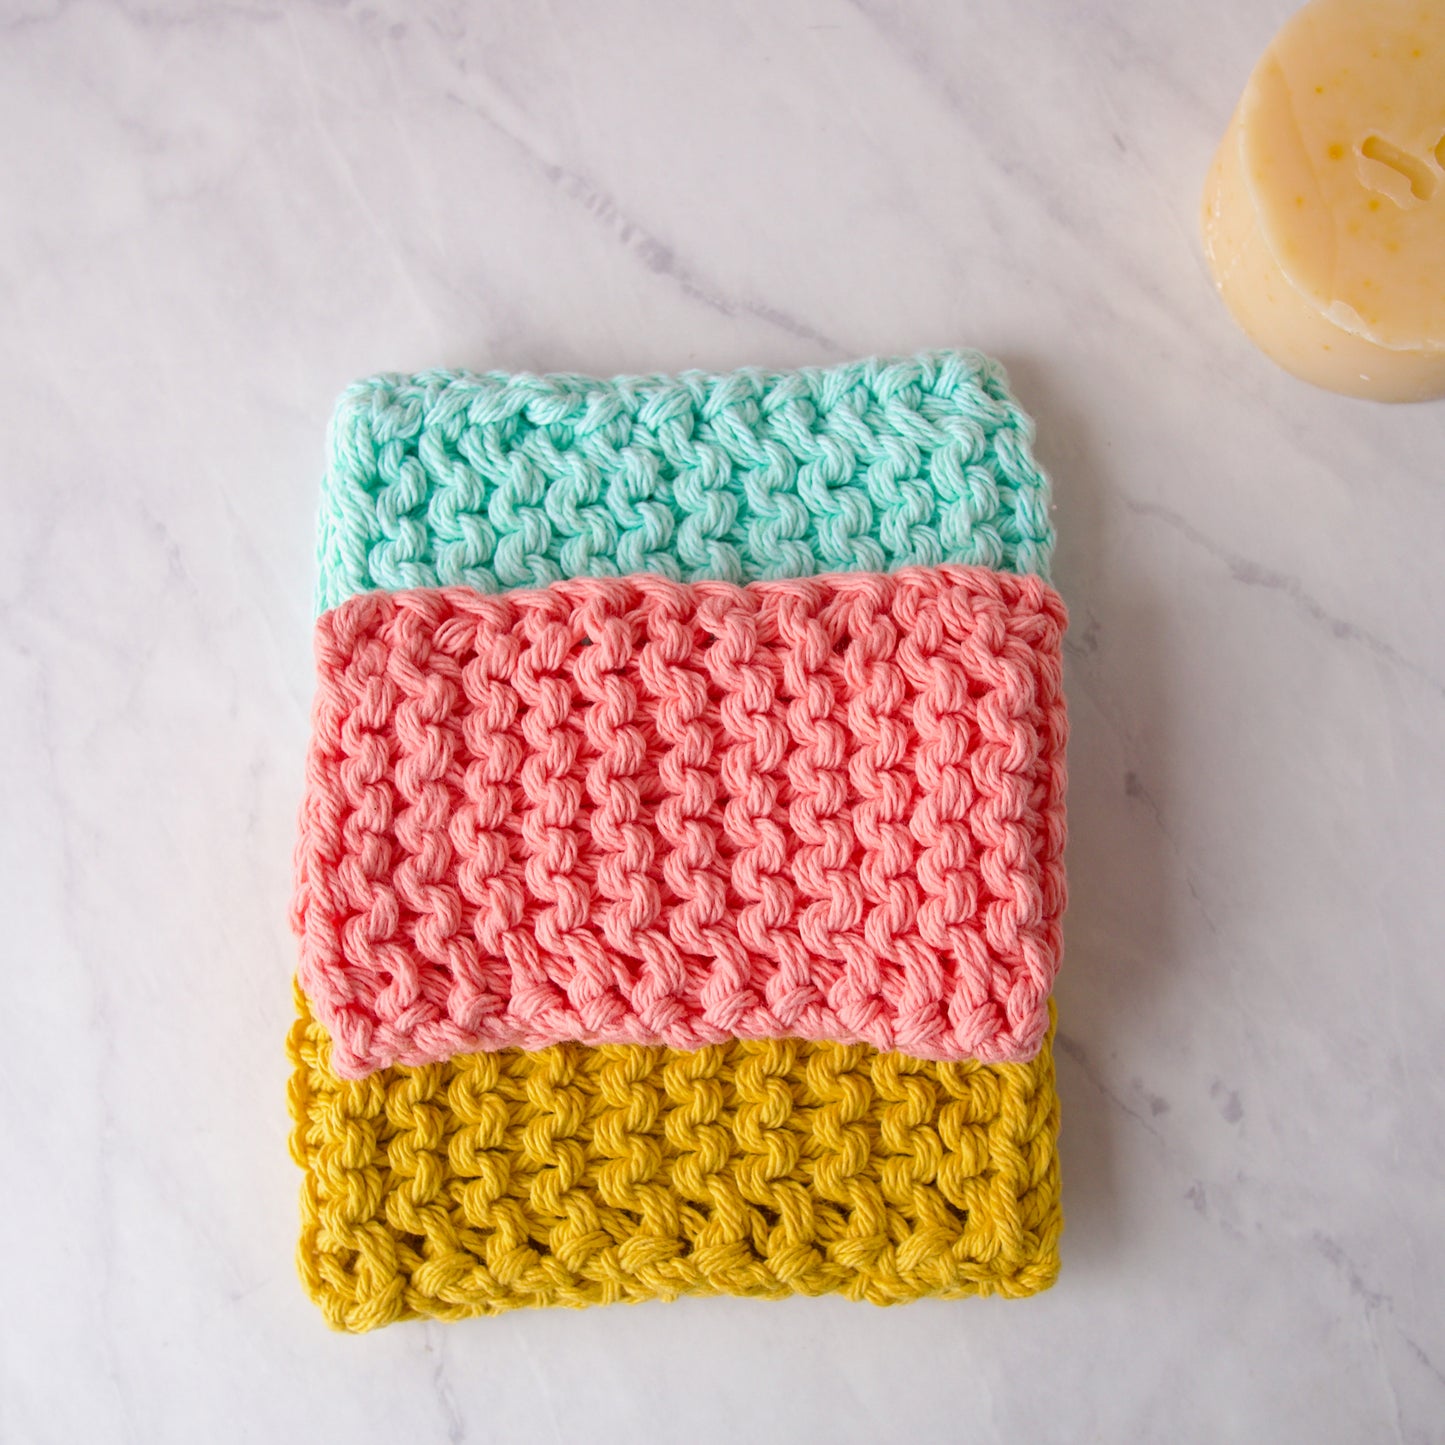 Reusable Cotton Sponge Pack in Pastel Colors